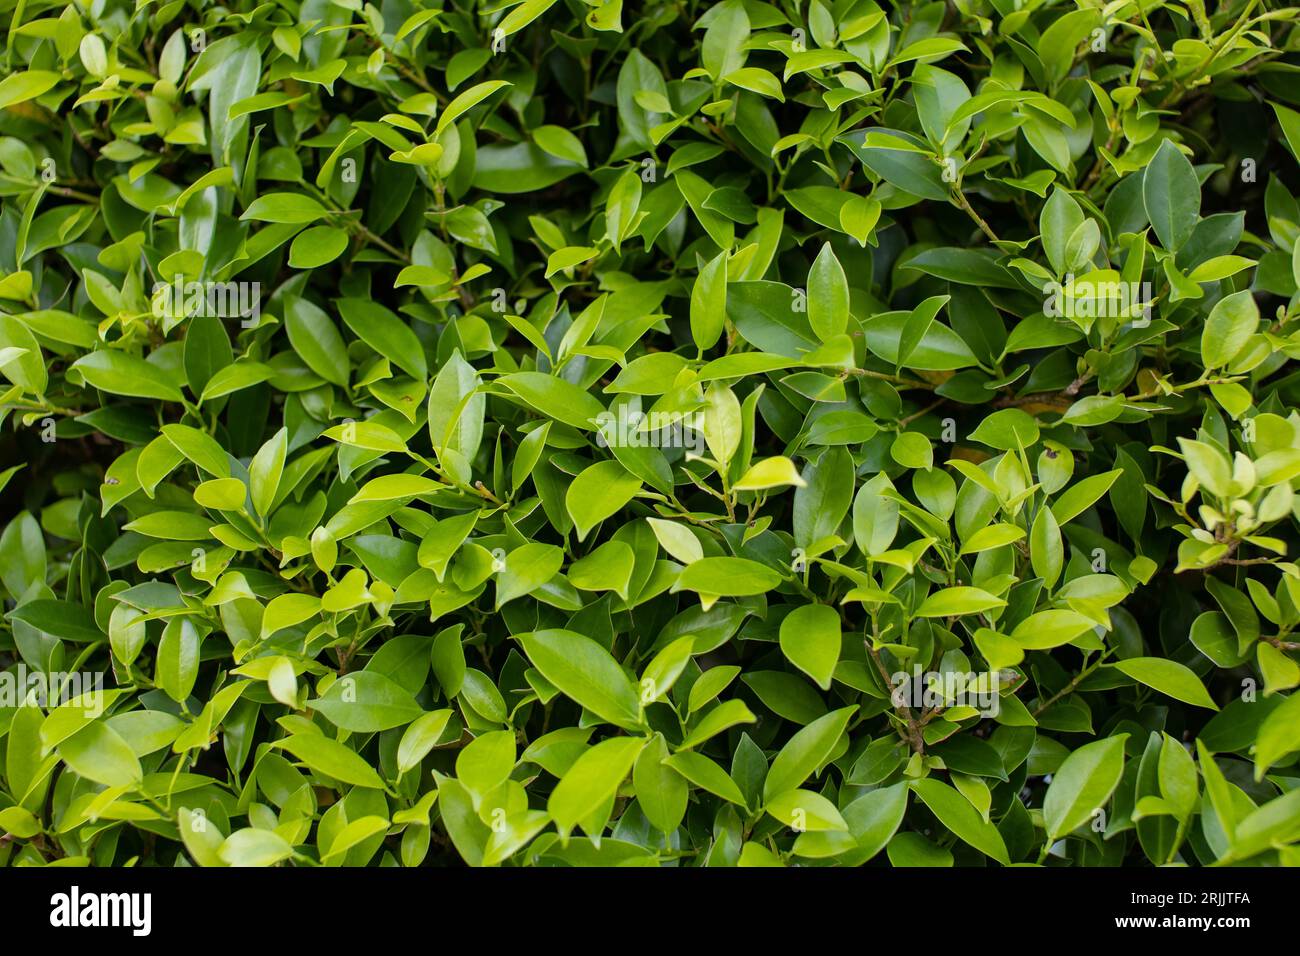 Natur der grünen Blätter im Garten im Sommer natürliche grüne Blattpflanzen, die als Hintergründe der Frühlingsdecke oder Grüntapete verwendet werden. Stockfoto